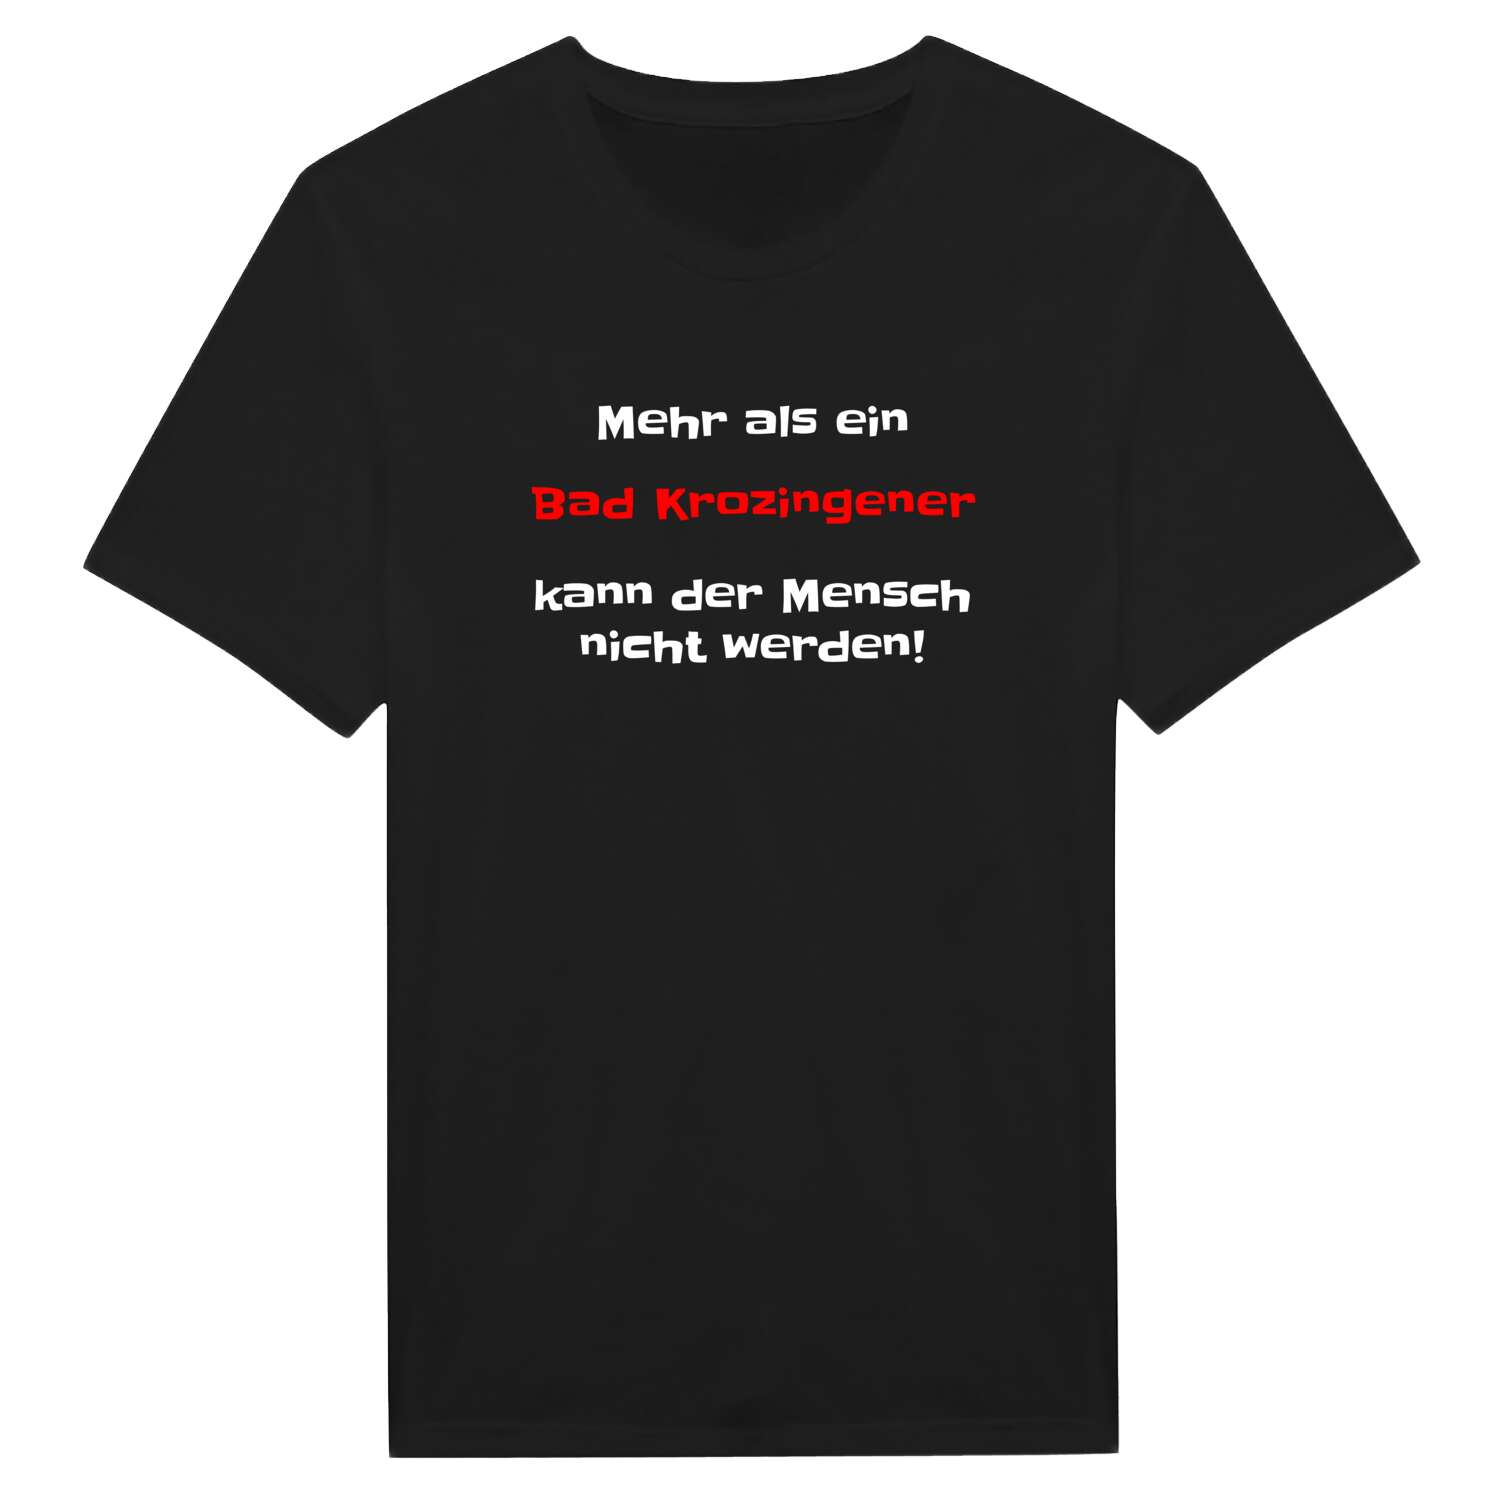 Bad Krozingen T-Shirt »Mehr als ein«